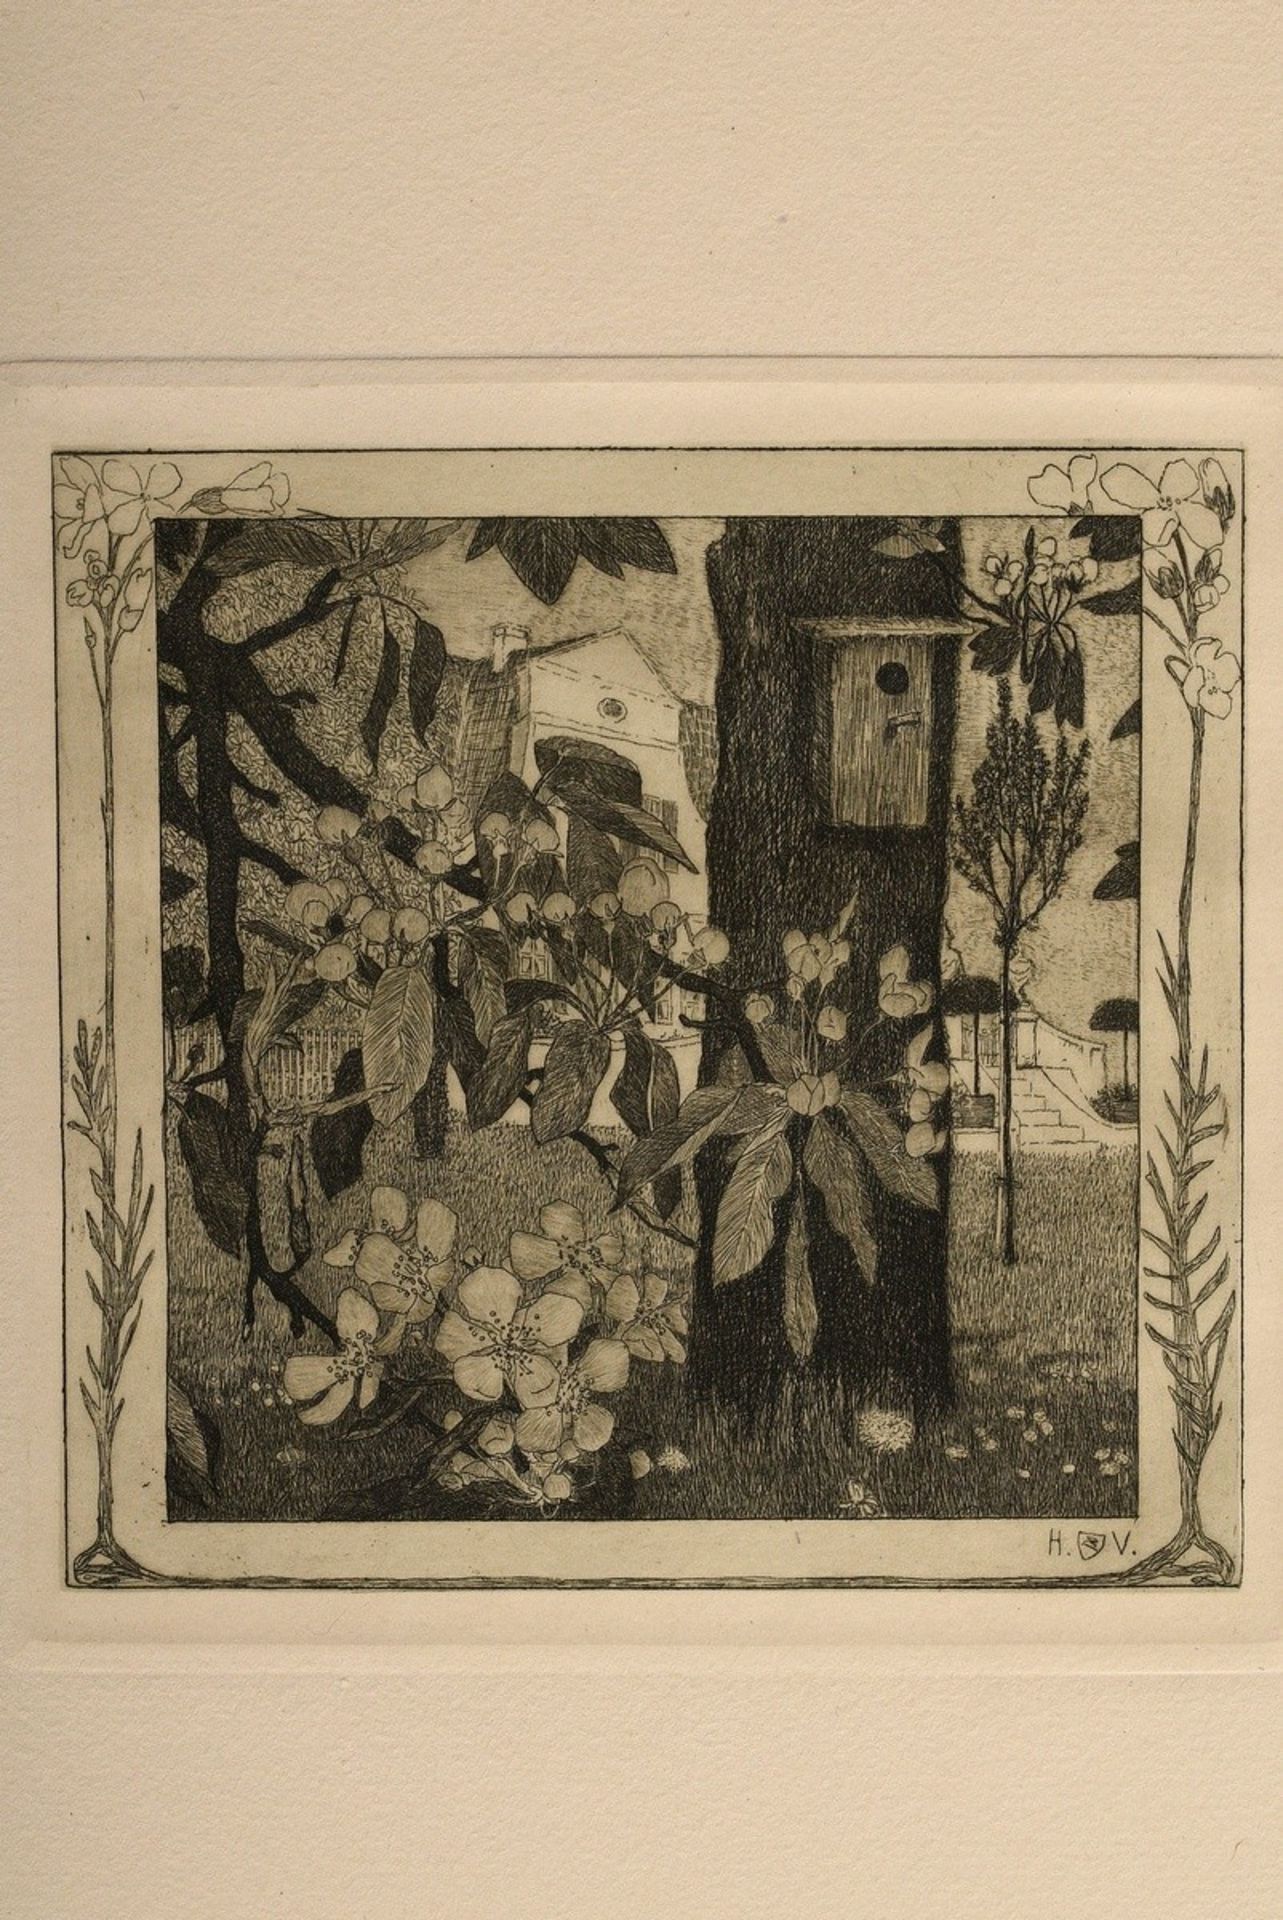 Vogeler, Heinrich (1872-1942) "An den Frühling" 1899/1901, Mappe mit 10 Radierungen und Vorblatt, P - Bild 23 aus 25